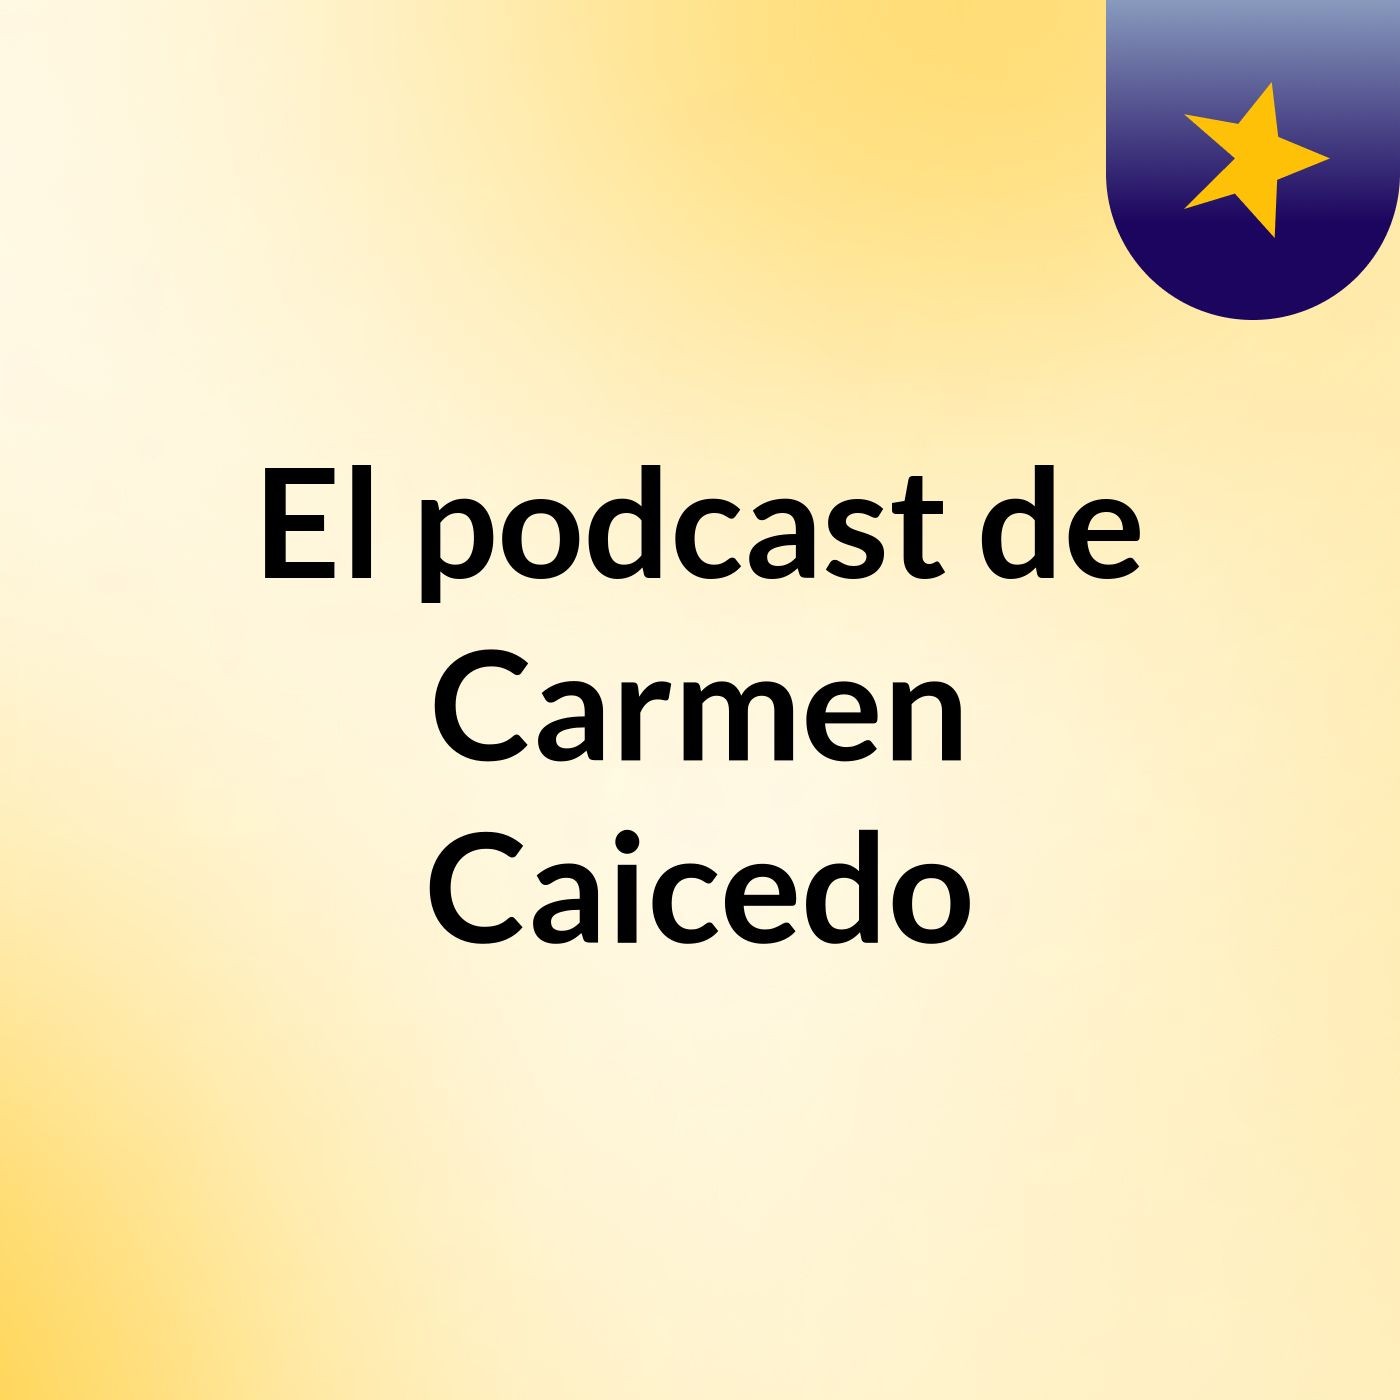 El podcast de Carmen Caicedo